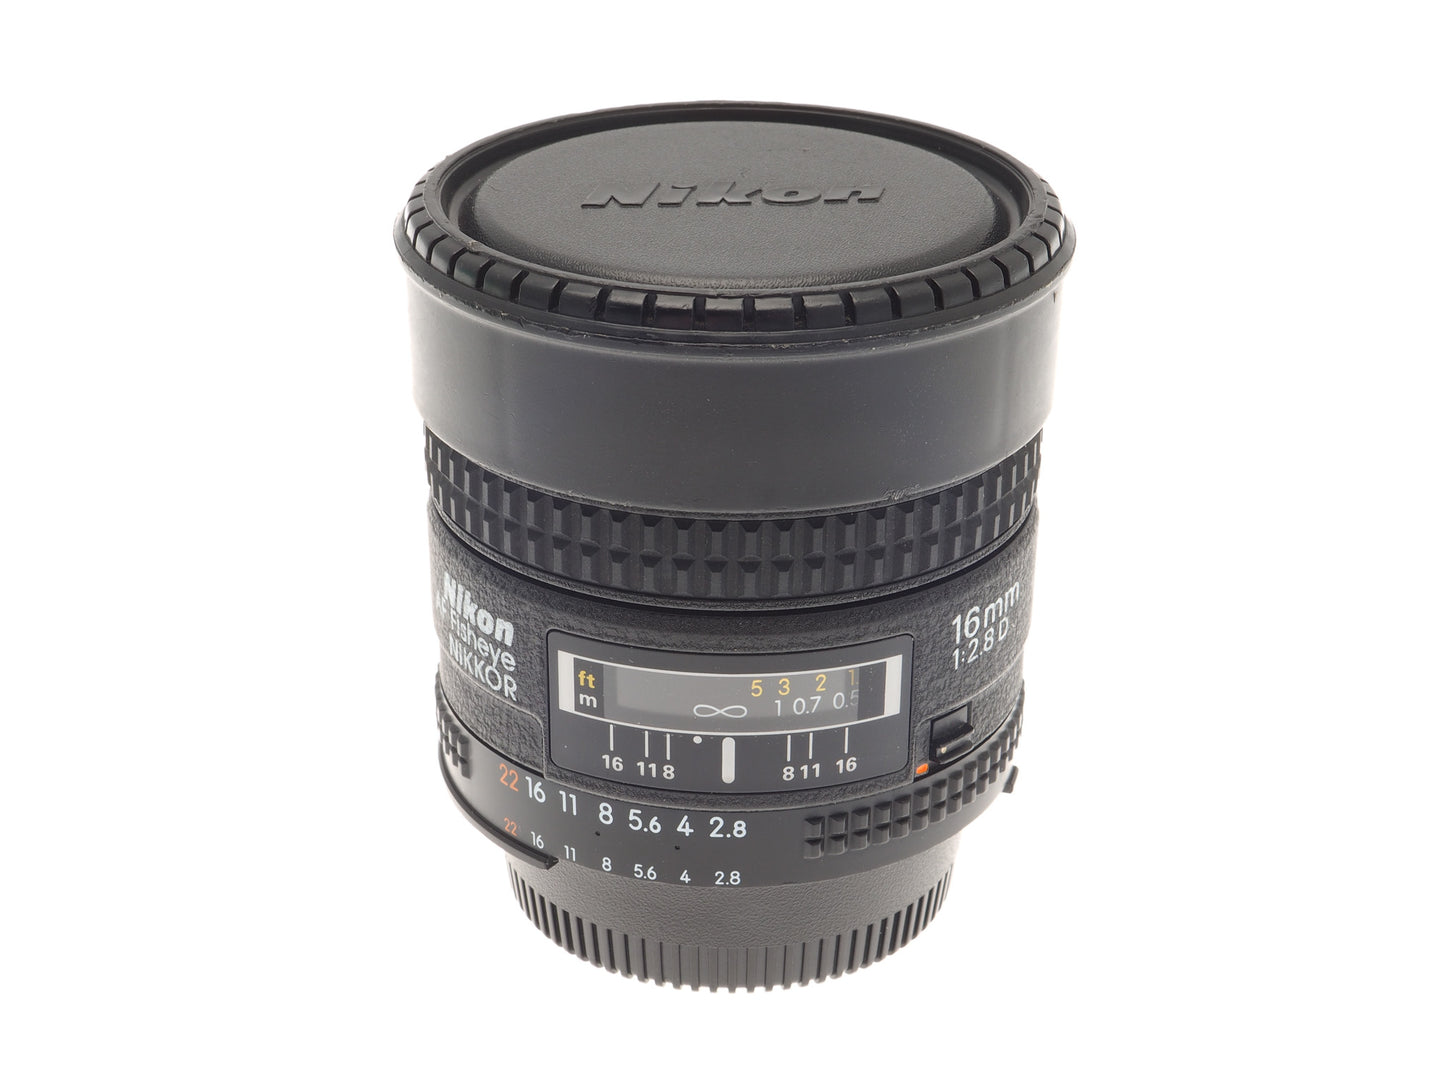 Nikon 16mm f2.8 D AF Fisheye Nikkor - Lens